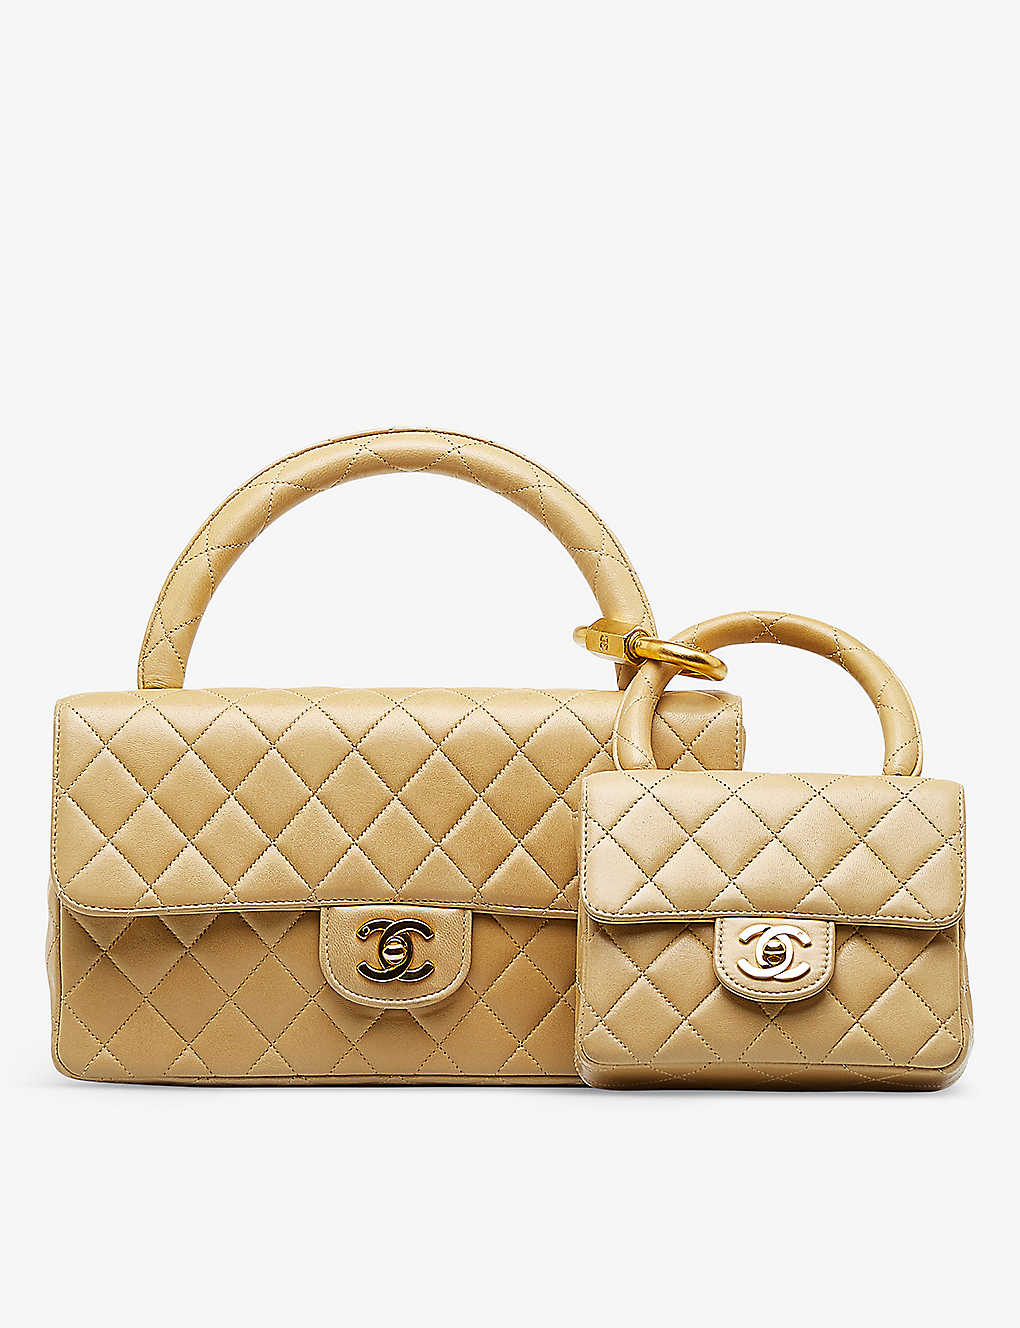 Reselfridges Pre-loved Chanel Leather Top-handle Bag In Brown Beige